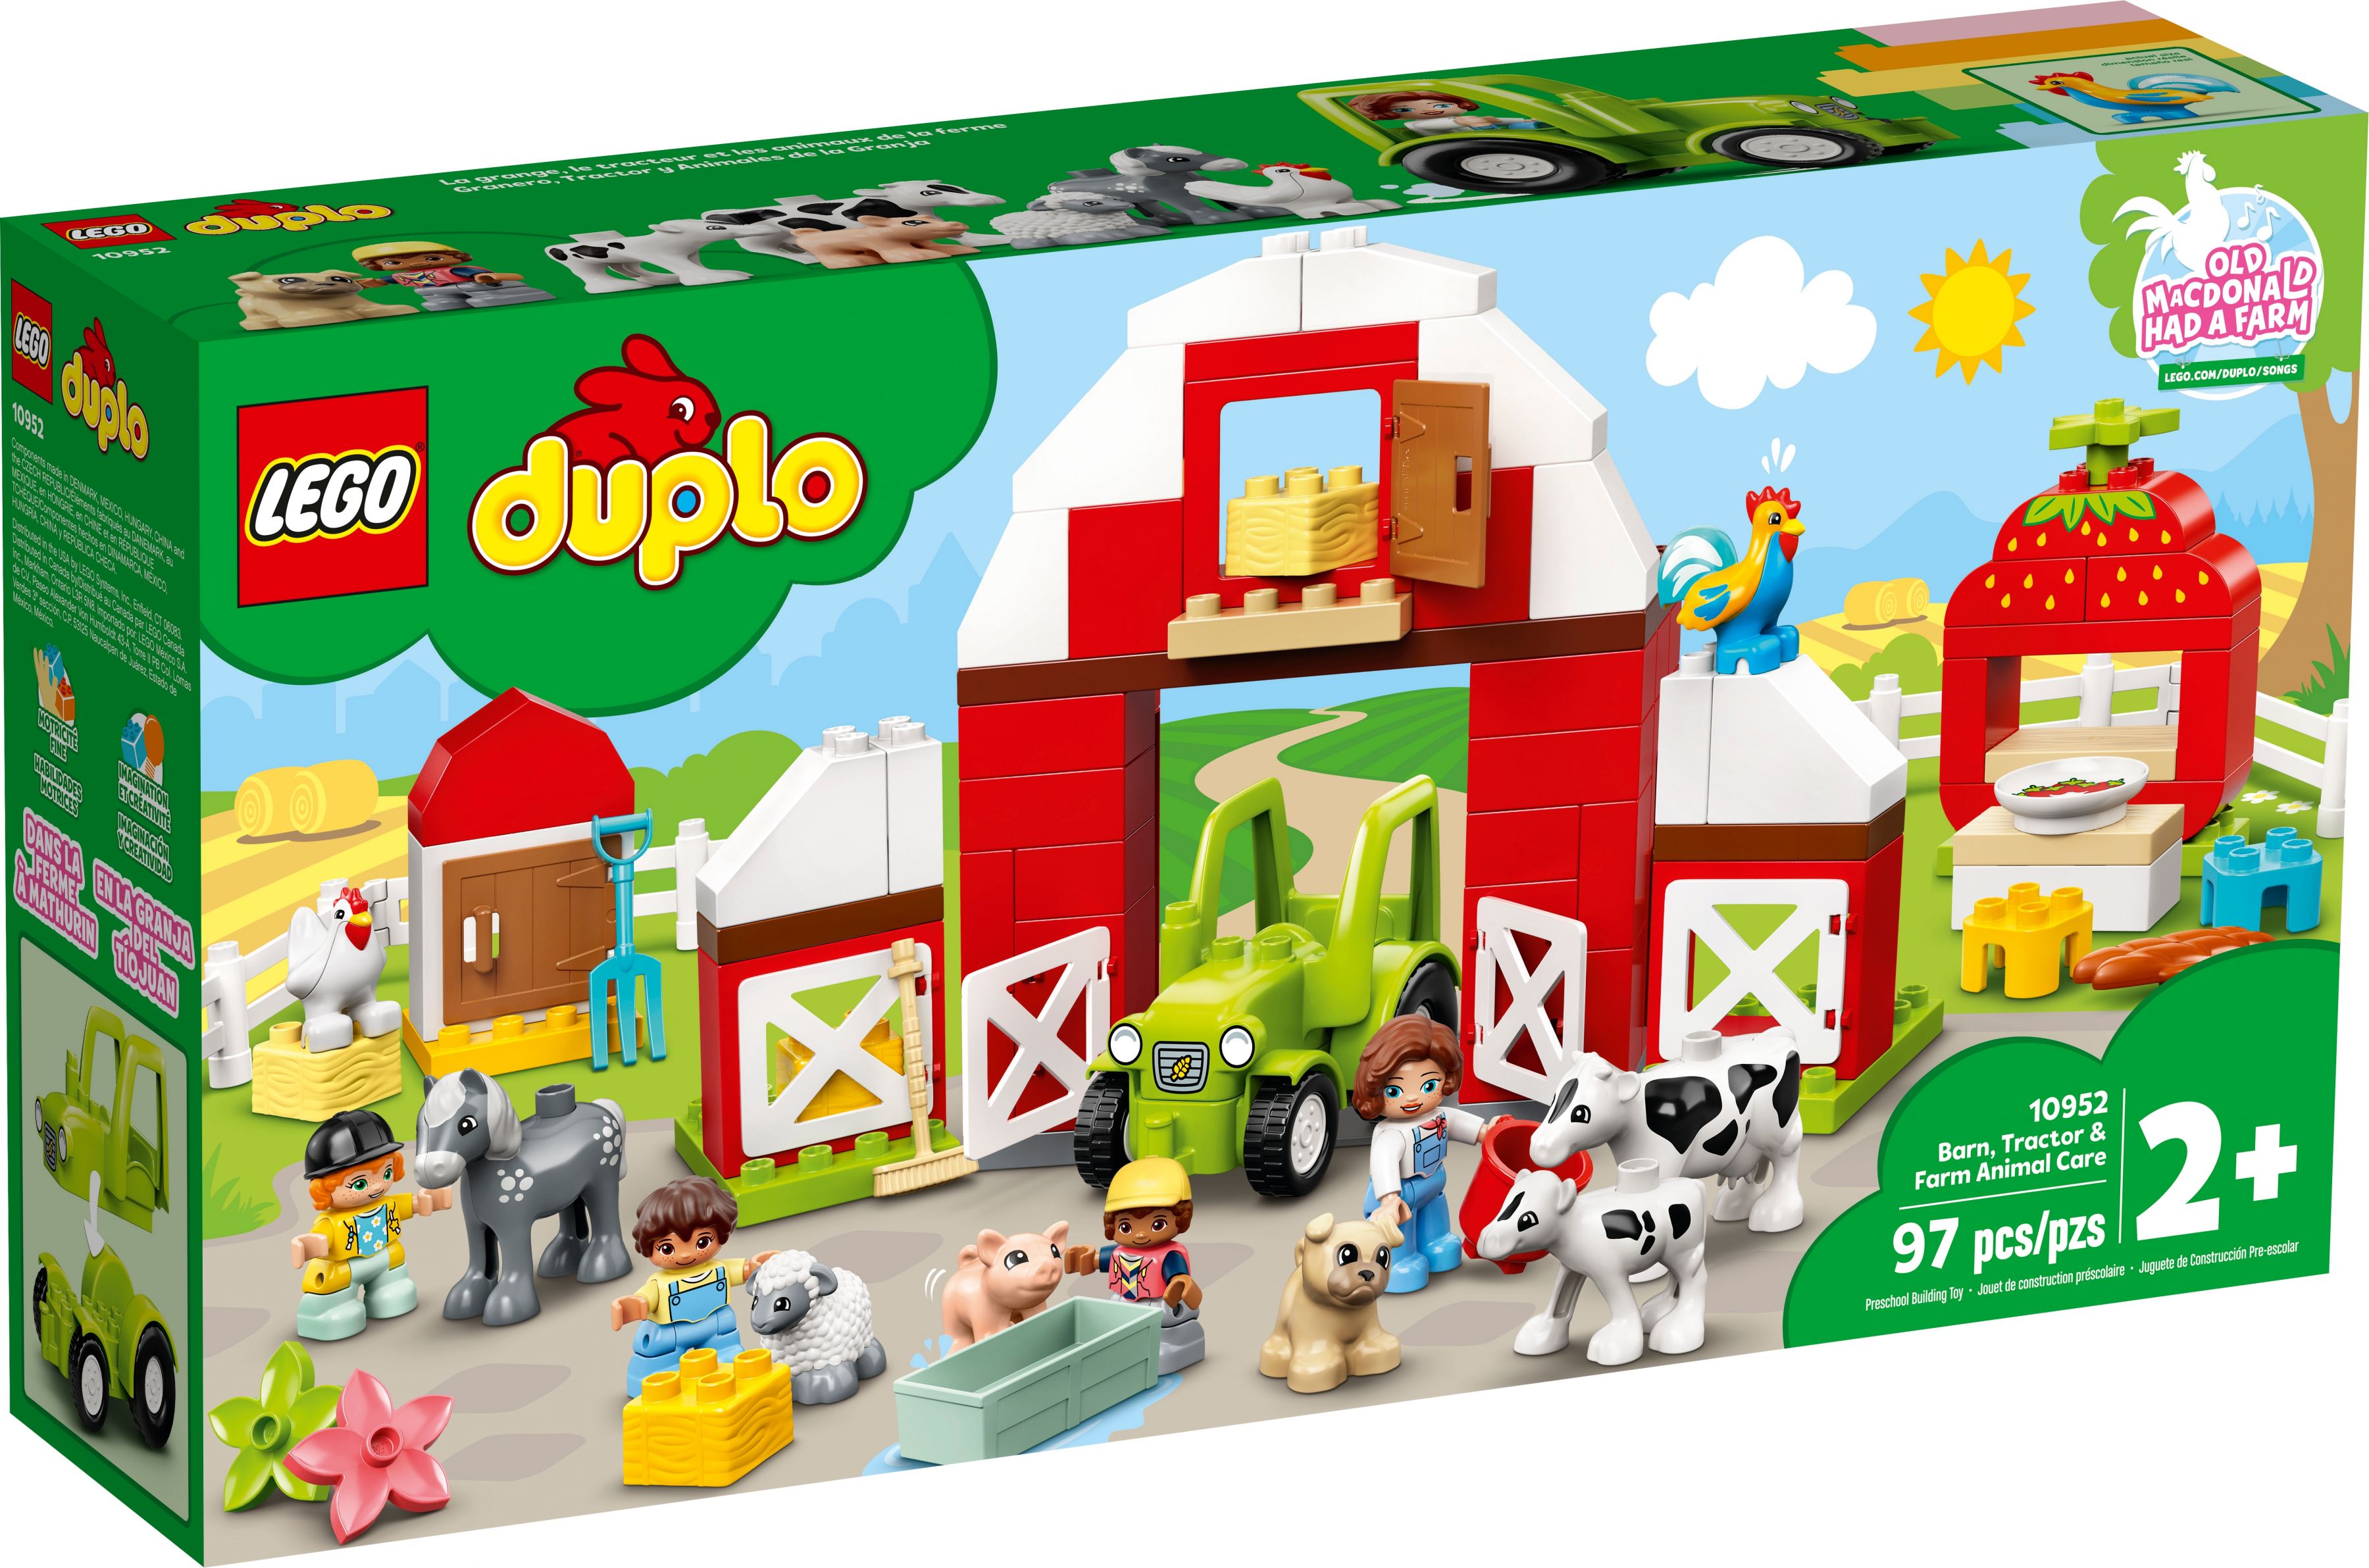 LEGO Duplo 10952 Scheune, Traktor und Tierpflege LEGO_10952_alt1.jpg